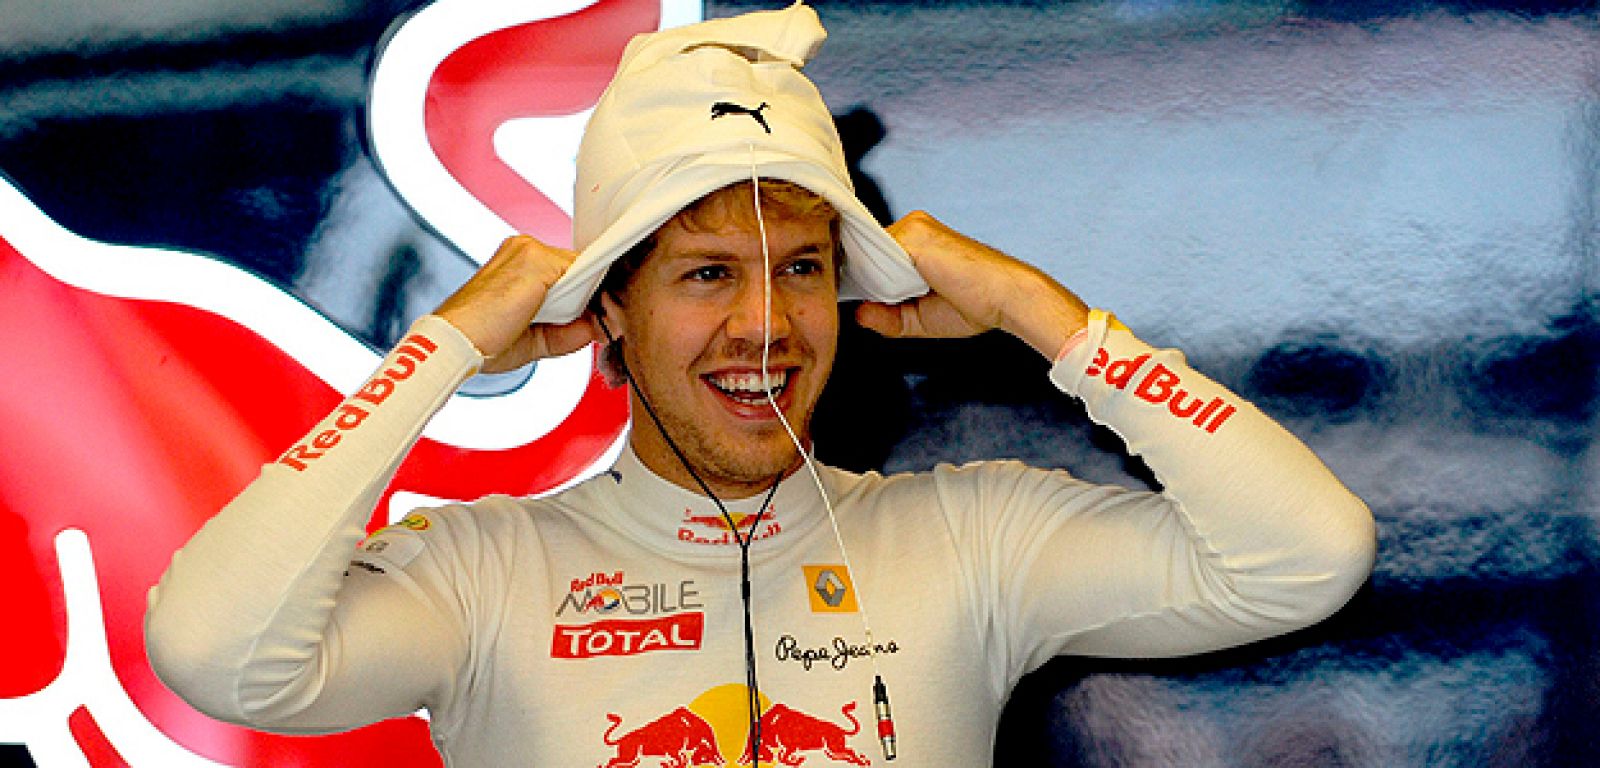 El piloto alemán de Fórmula Uno Sebastian Vettel, de la escudería Red Bull, se prepara para participar en la primera sesión de entrenamientos libres en el circuito Hungaroring